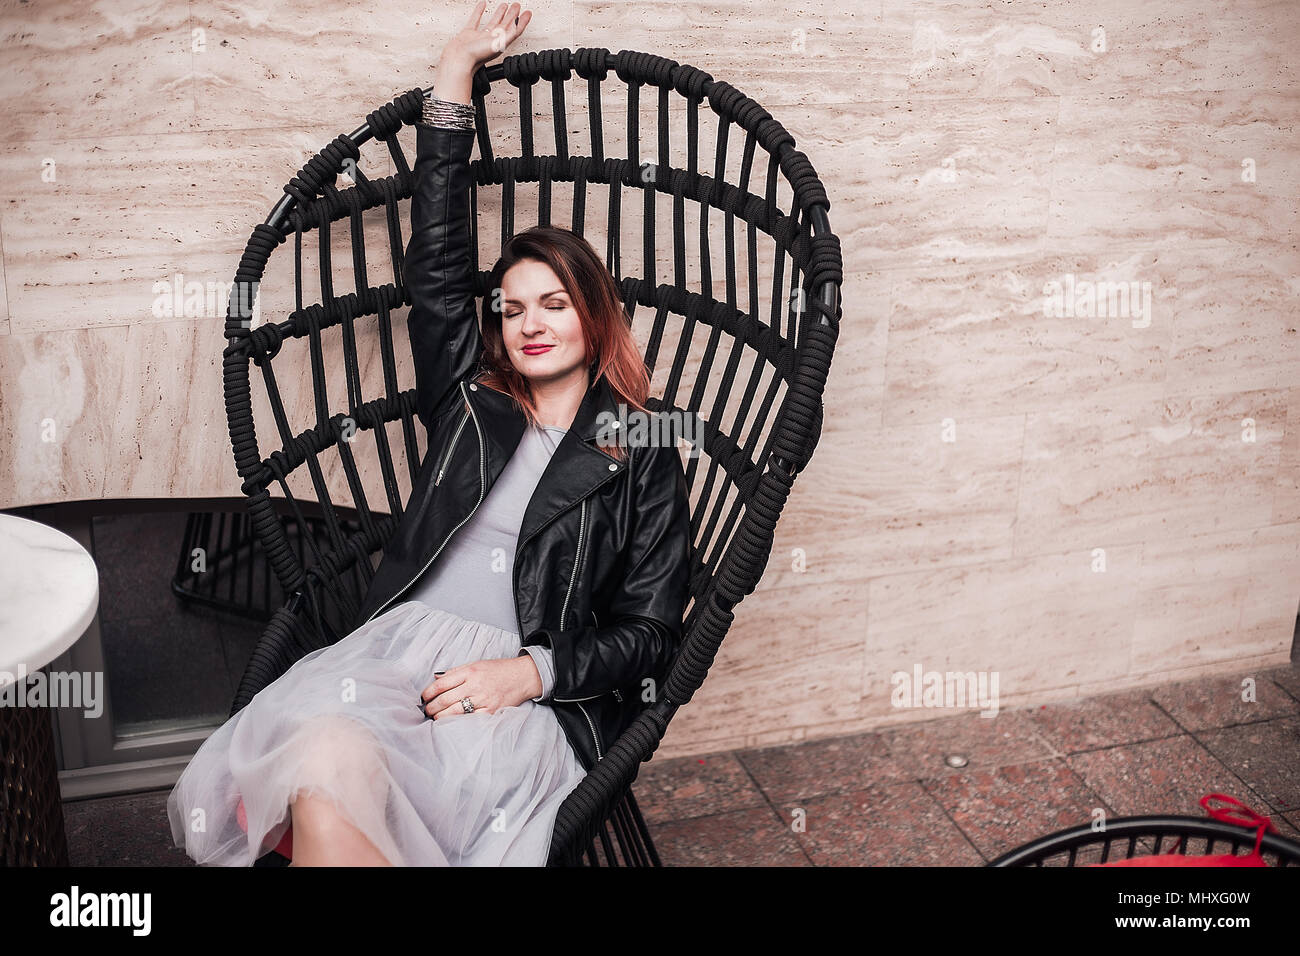 Retrato de mujer sentada en una silla con el brazo levantado Foto de stock